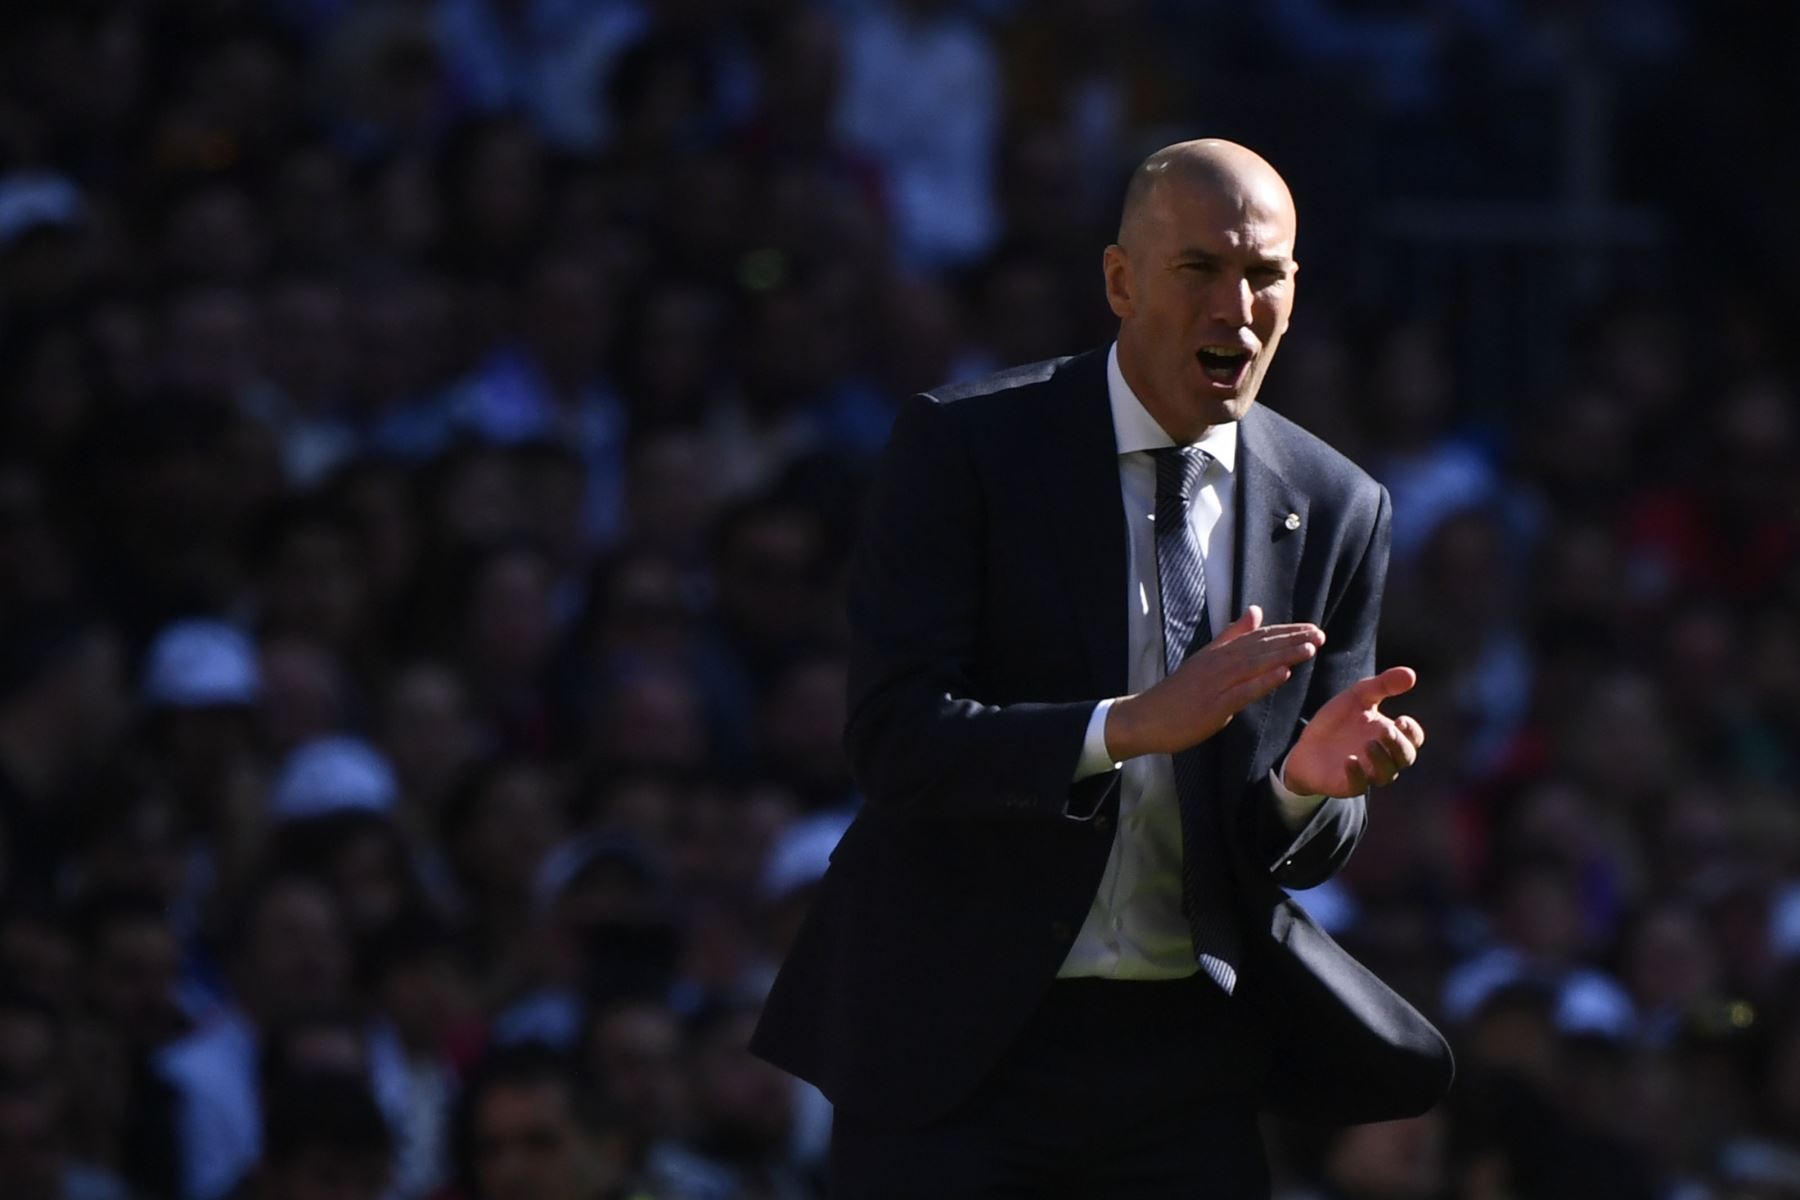 El entrenador francÃ©s del Real Madrid, Zinedine Zidane, aplaude desde la banca durante el partido de fÃºtbol de la liga espaÃ±ola entre el Real Madrid CF y el RC Celta de Vigo en el estadio Santiago BernabÃ©u en Madrid.Foto: AFP